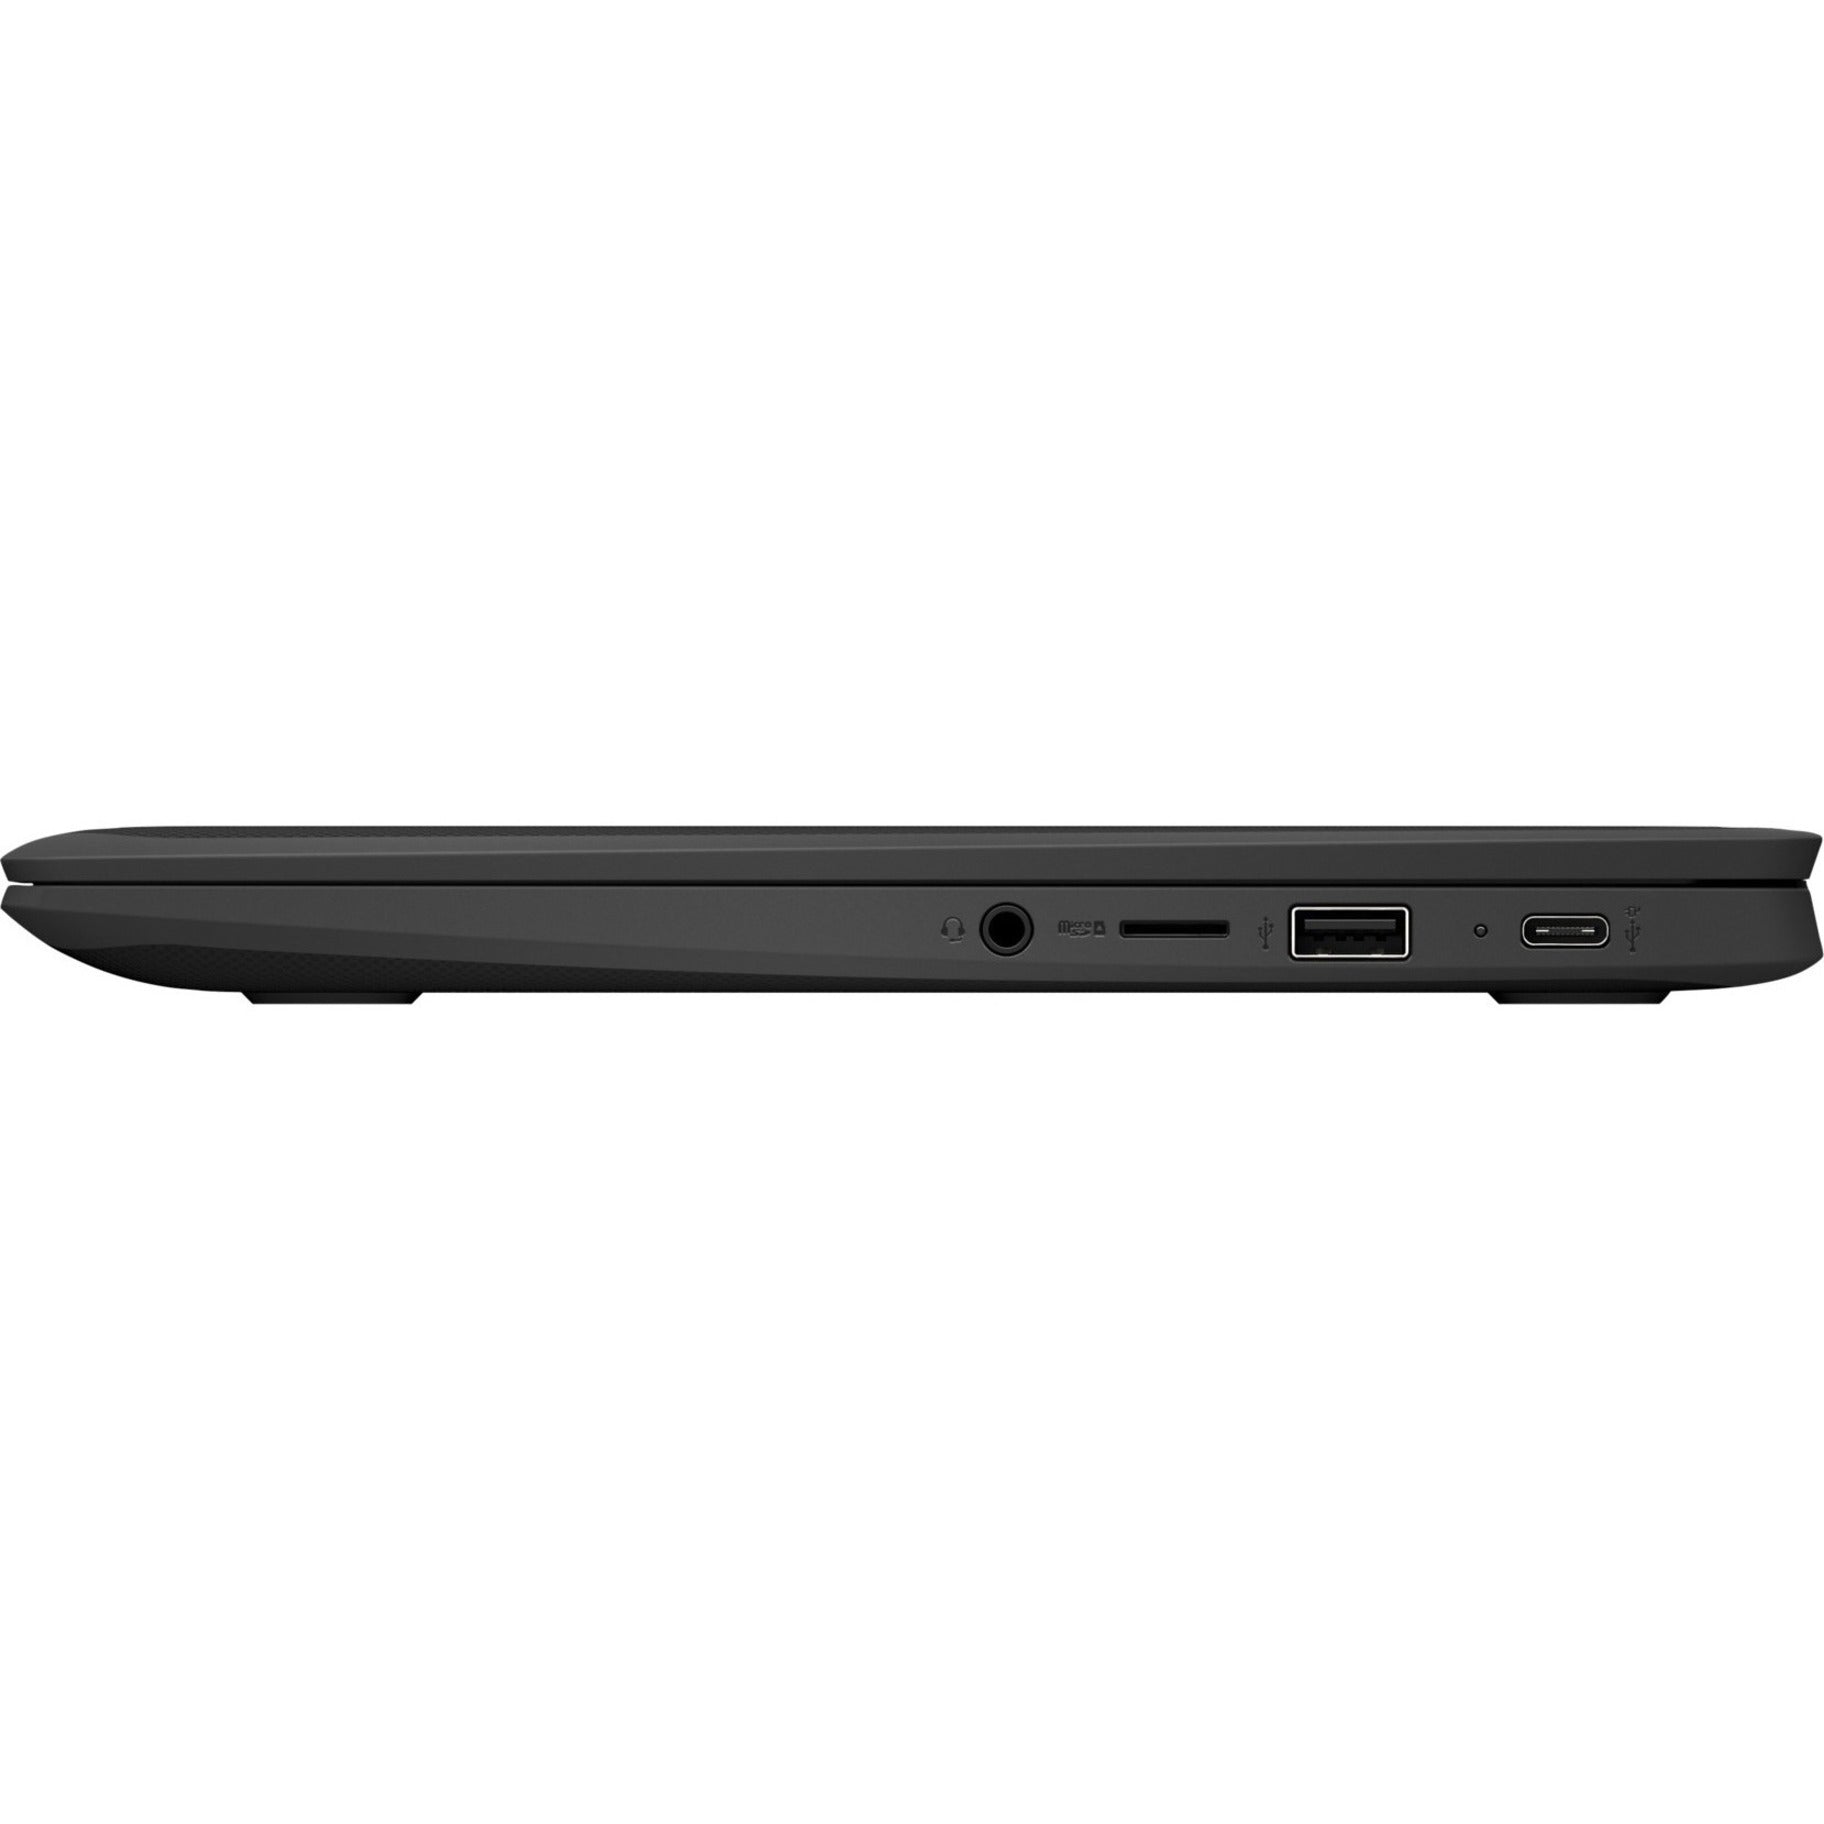 Acer Chromebook 311 C722T C722T-K8ZZ 11.6 Touchscreen Chromebook